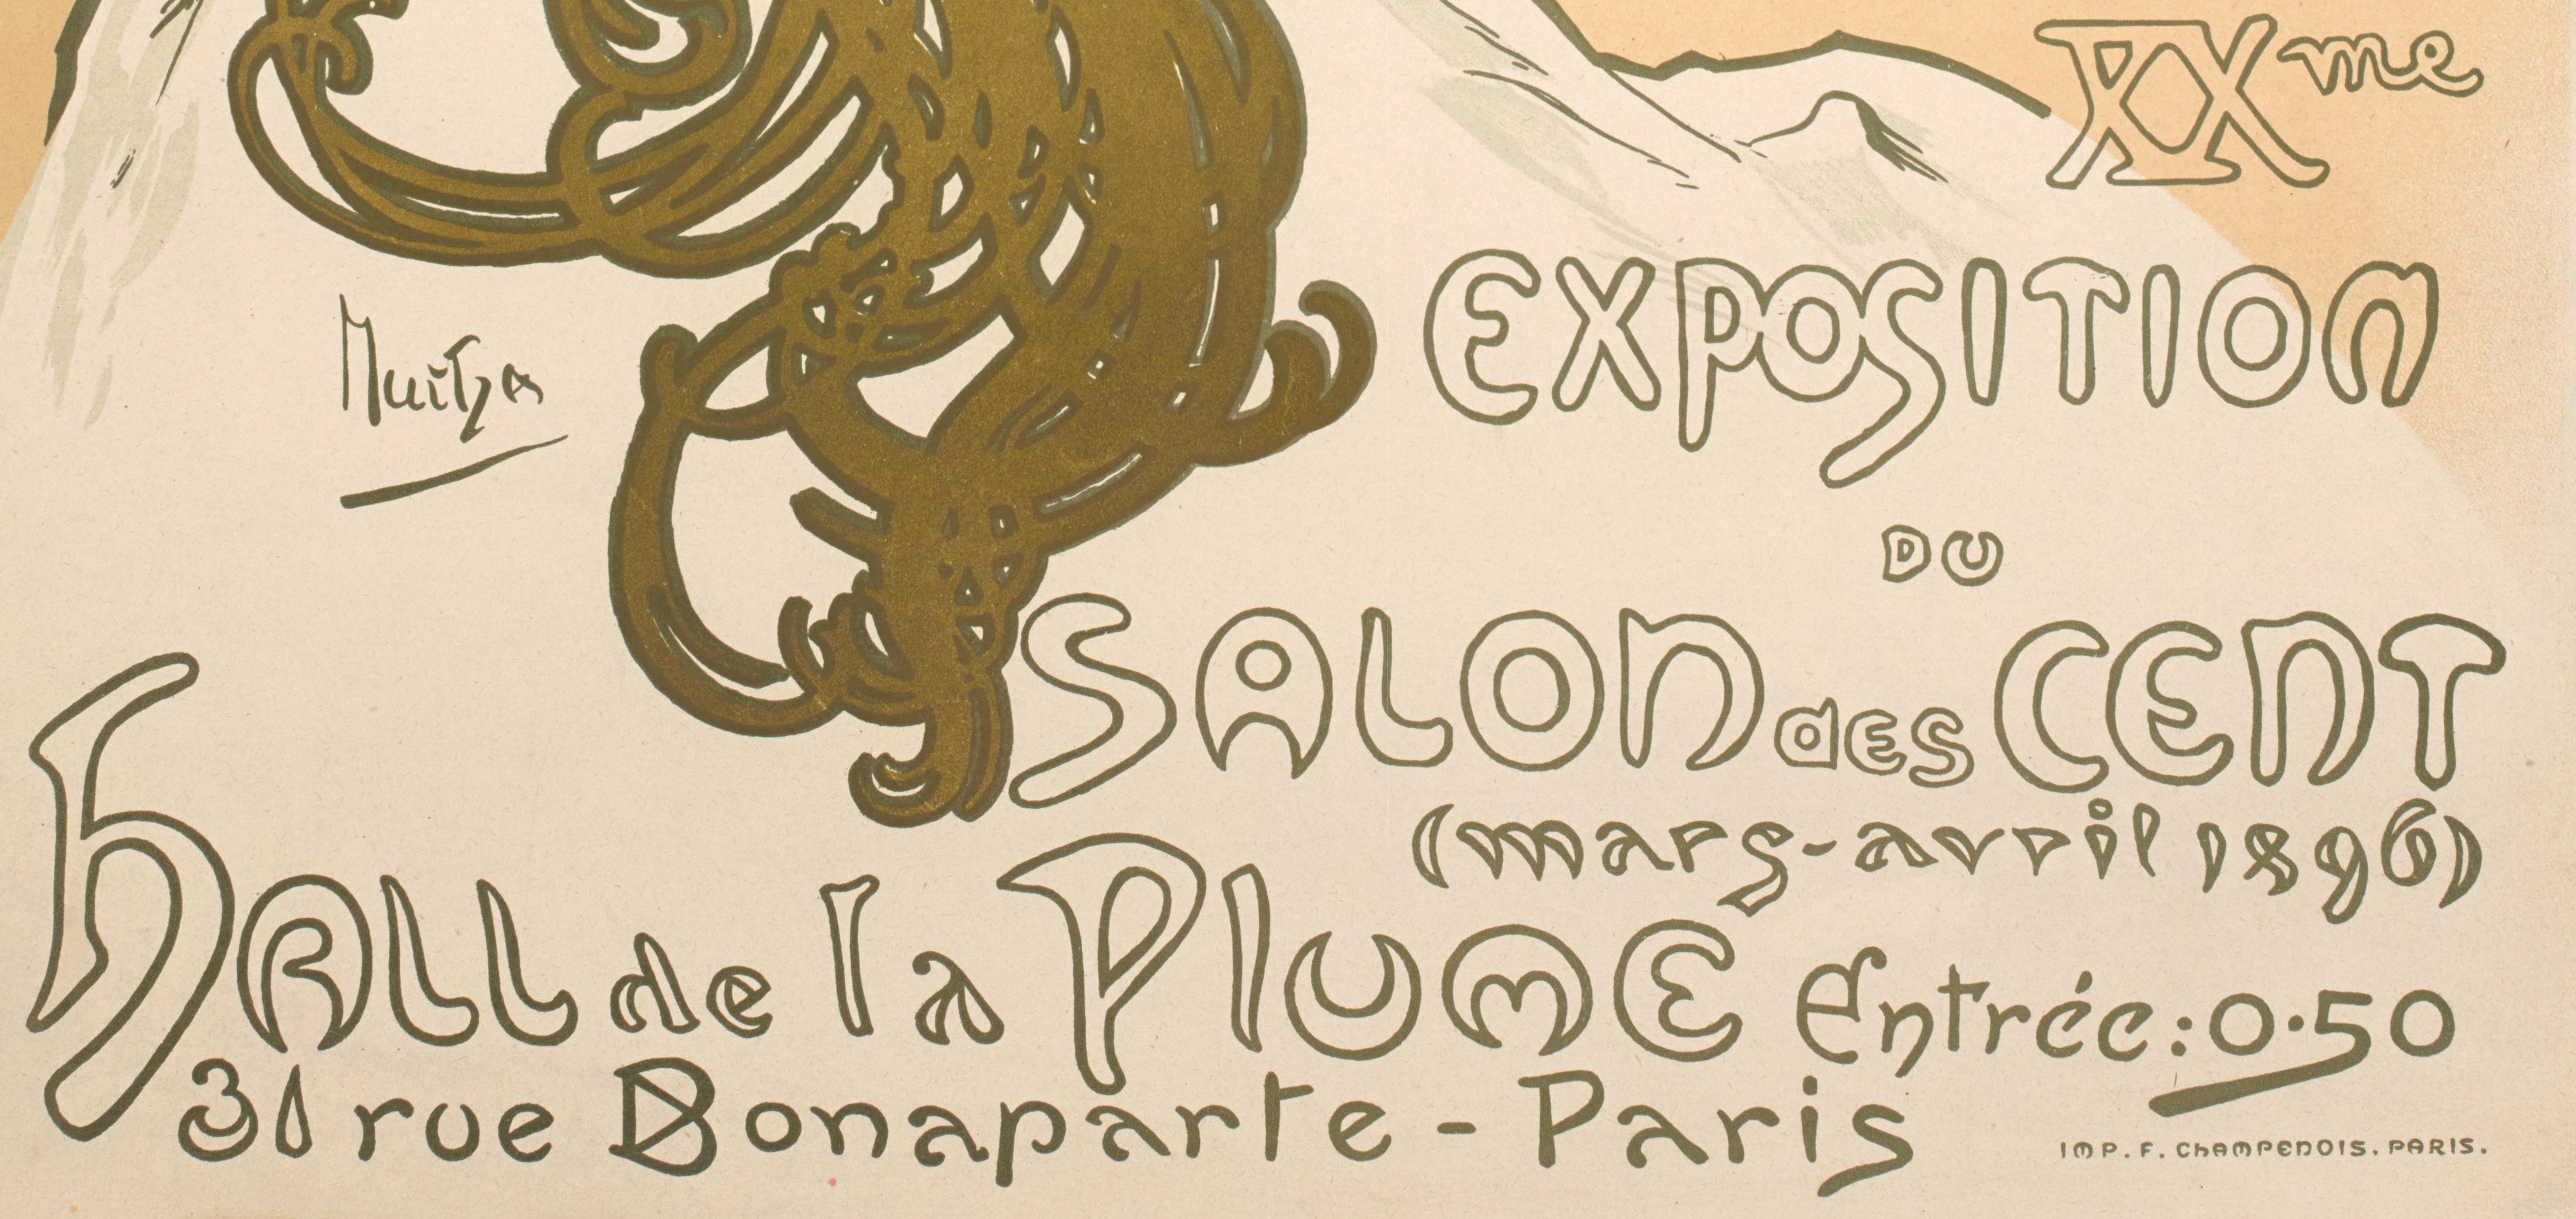 Paper Mucha, Salon des Cent, Original Art Nouveau Belle Epoque Vintage Poster, 1896 For Sale